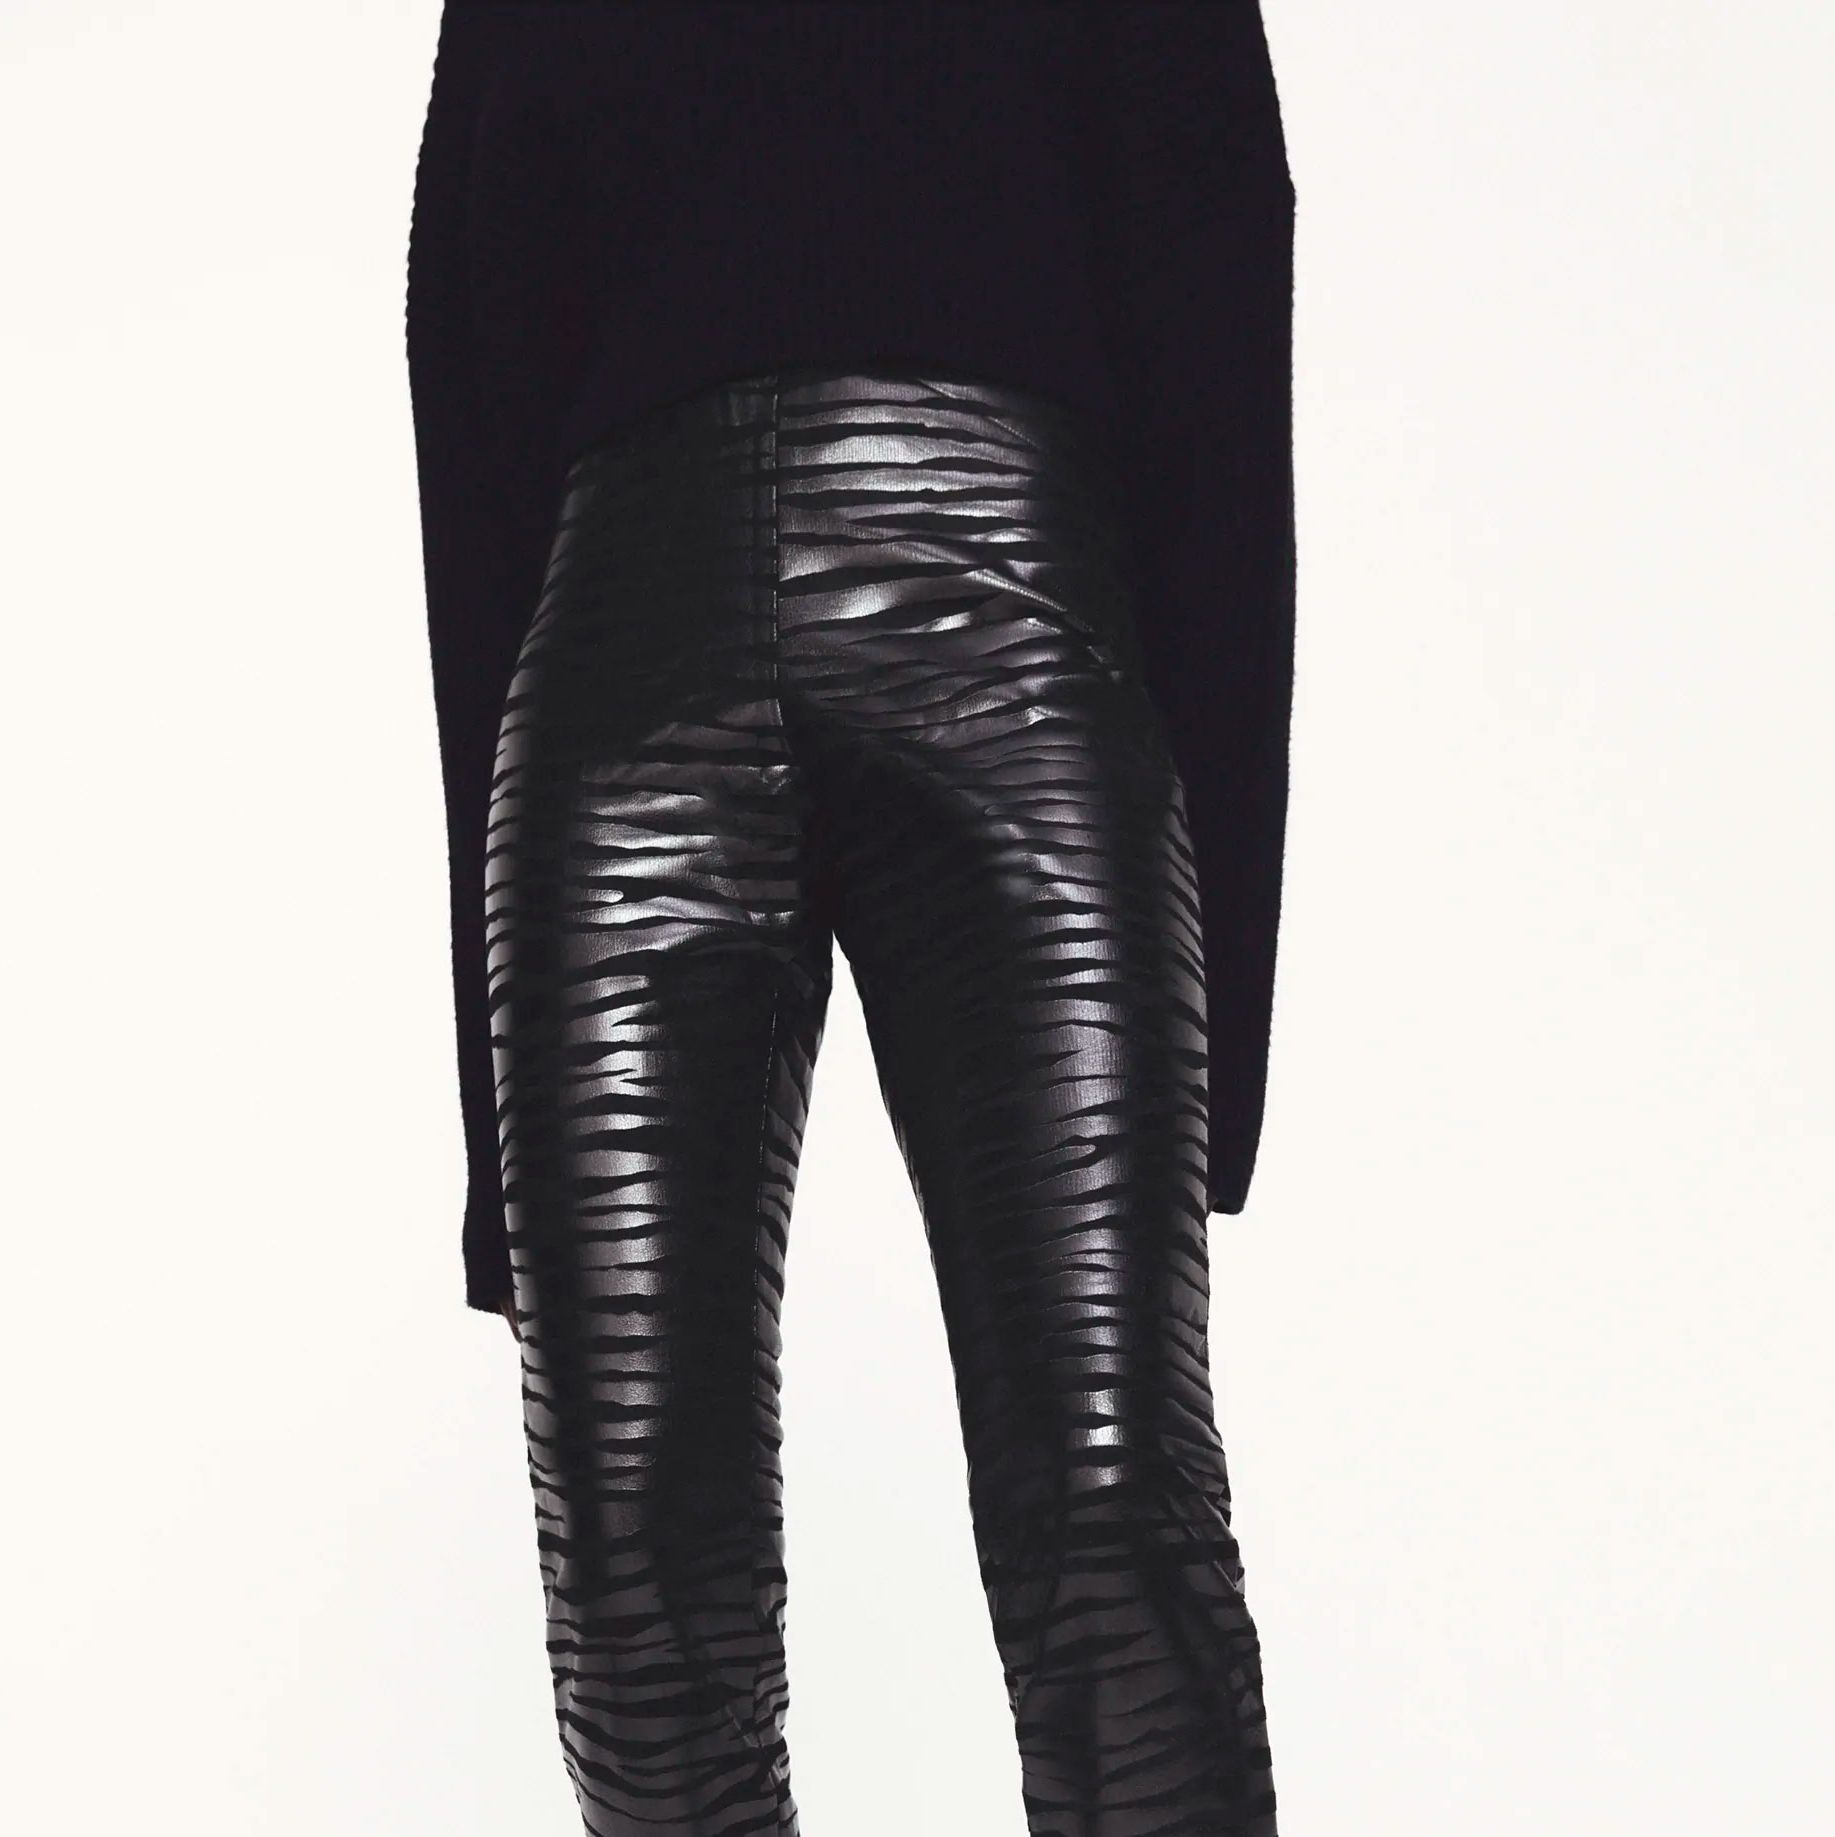 Los leggings negros de vestir efecto fiel curvados llegan a Zara